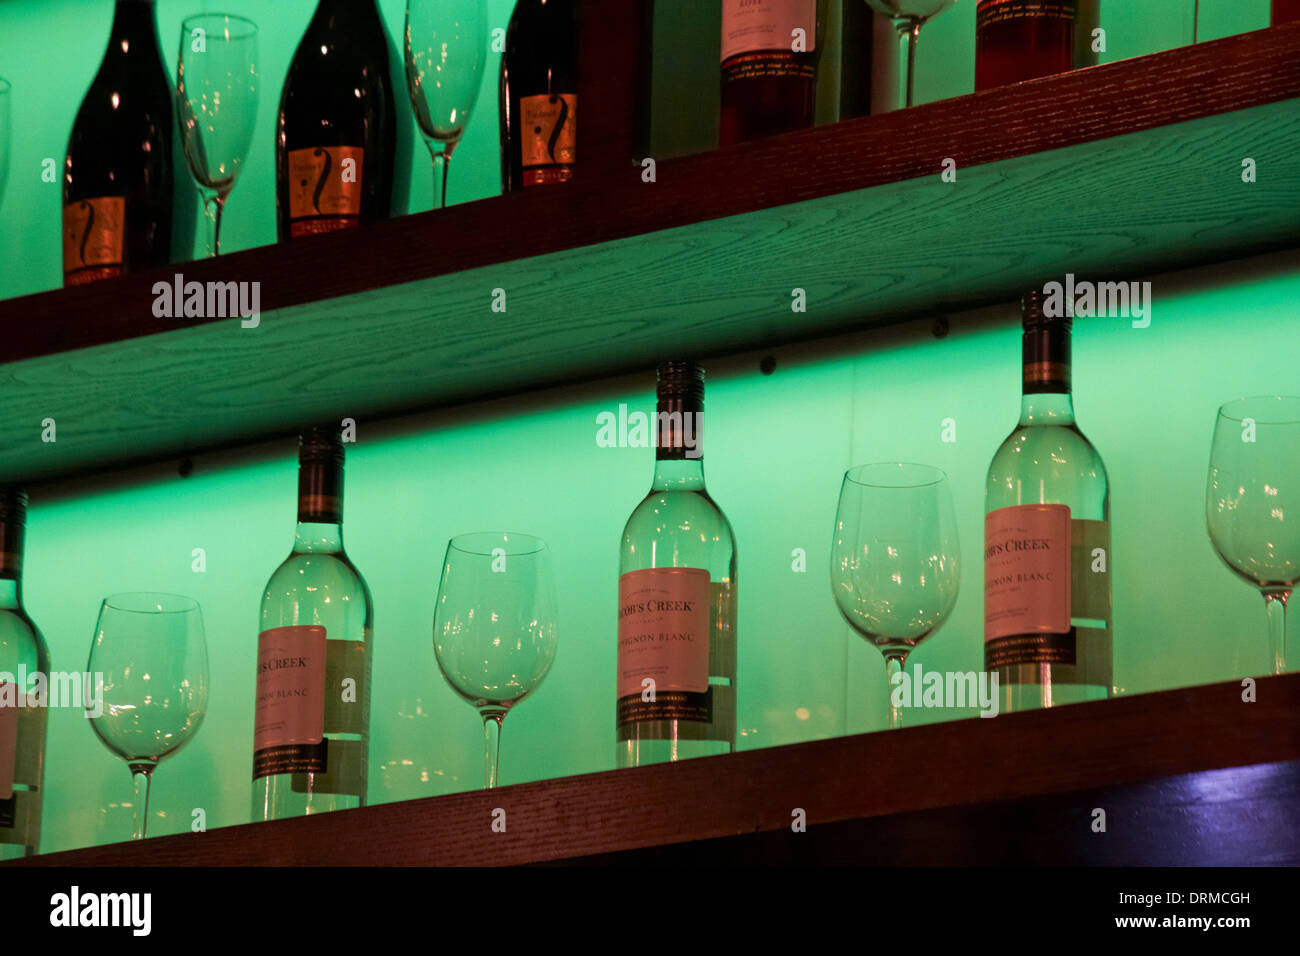 Flaschen Jacobs Creek Sauvignon Blanc Weißwein und Weingläser in Regalen mit grüner Beleuchtung Stockfoto